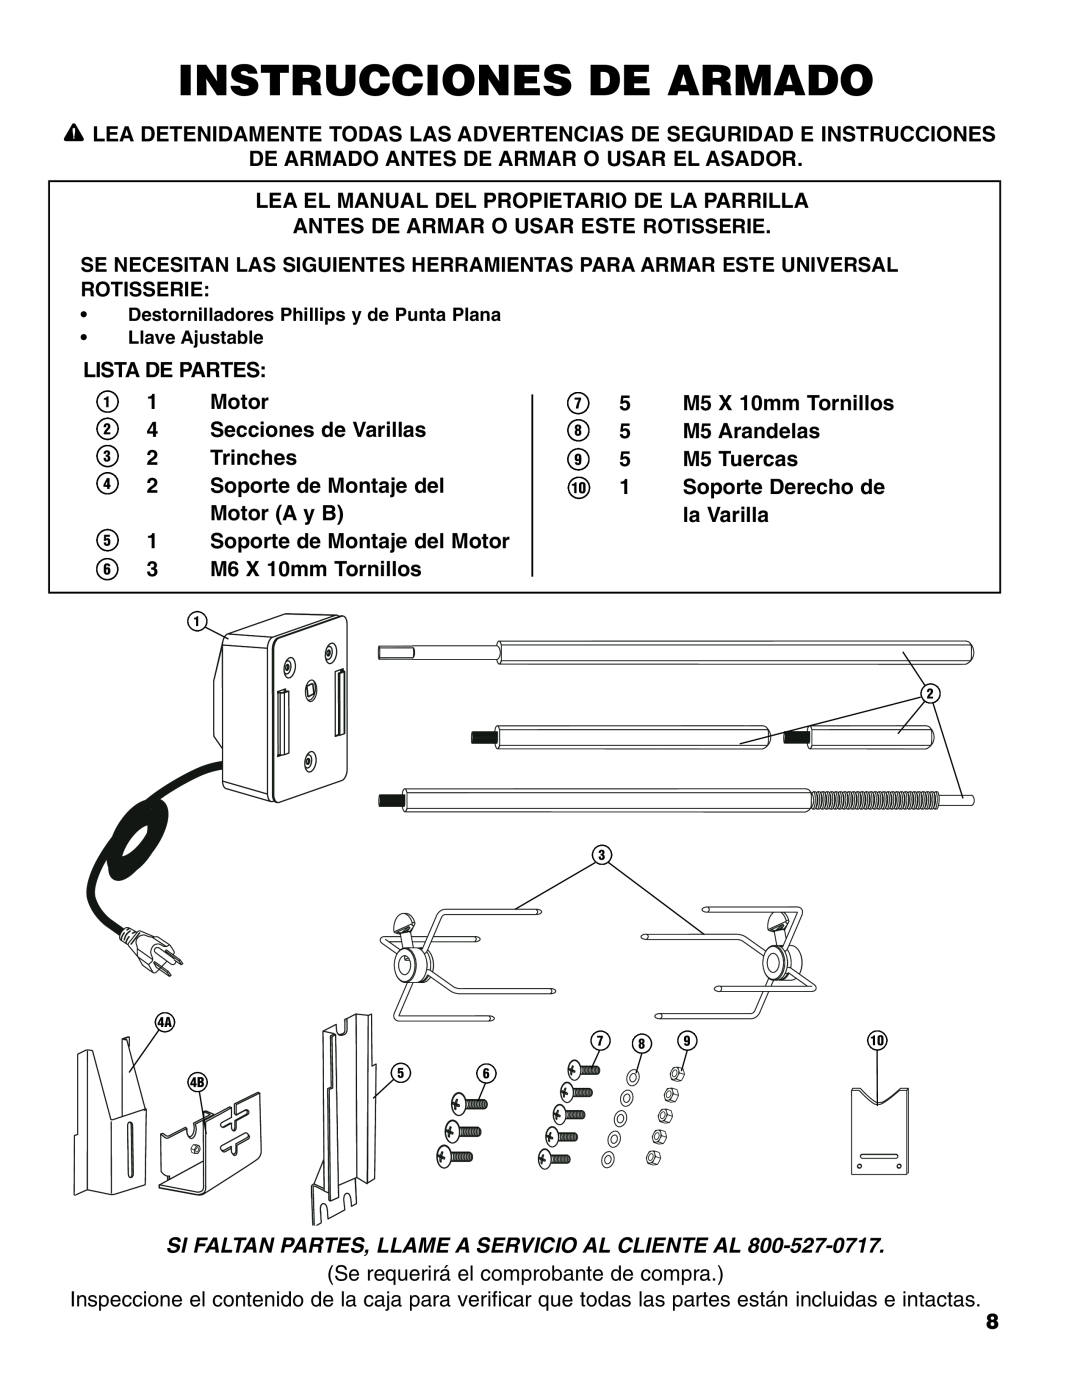 Brinkmann Universal Rotisserie manual Instrucciones De Armado, Si Faltan Partes, Llame A Servicio Al Cliente Al 